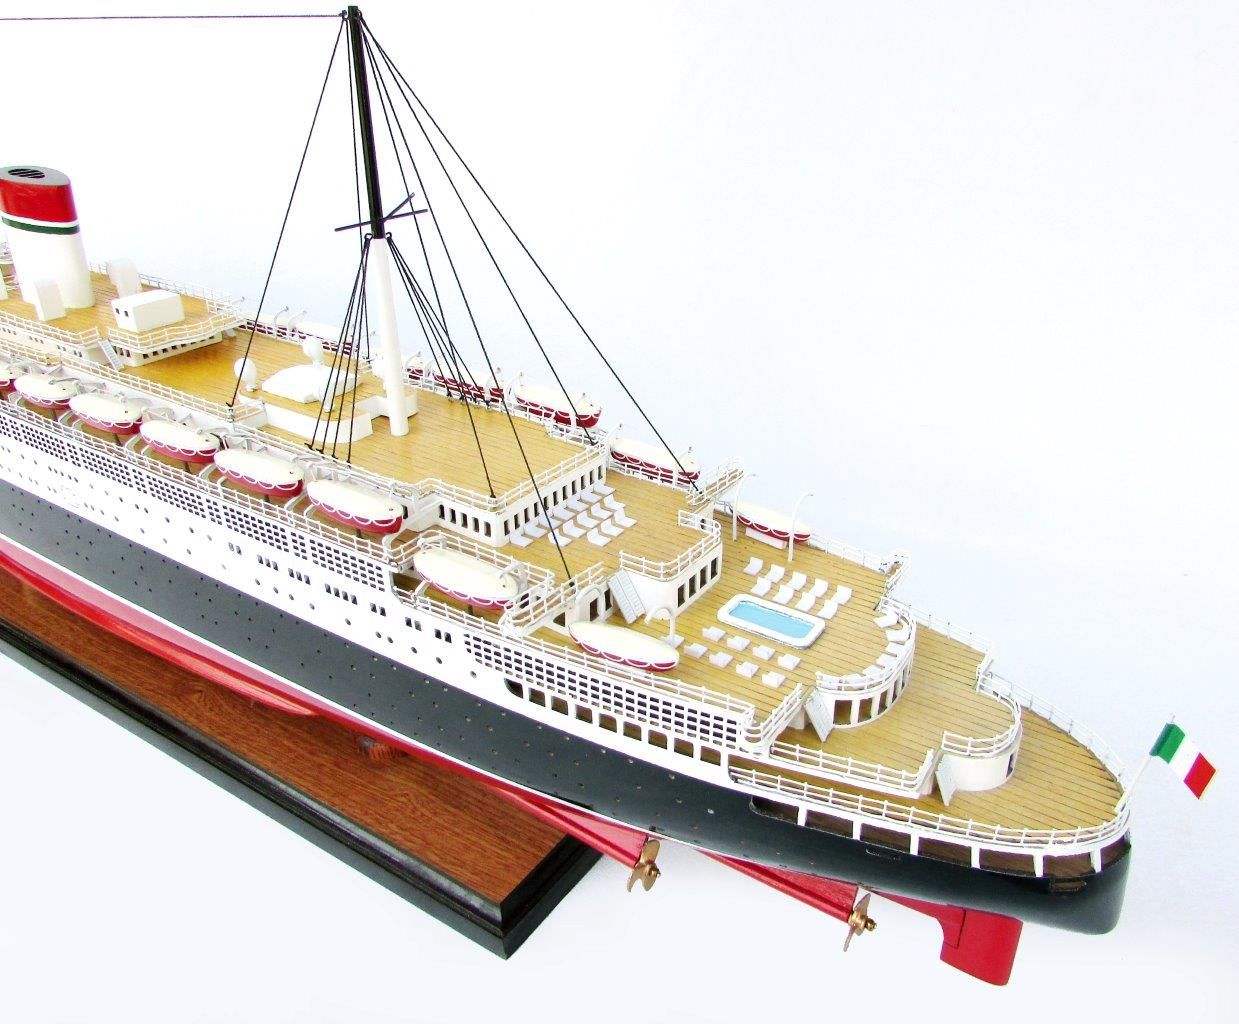 Conte Di Savoia Ship Model - GN